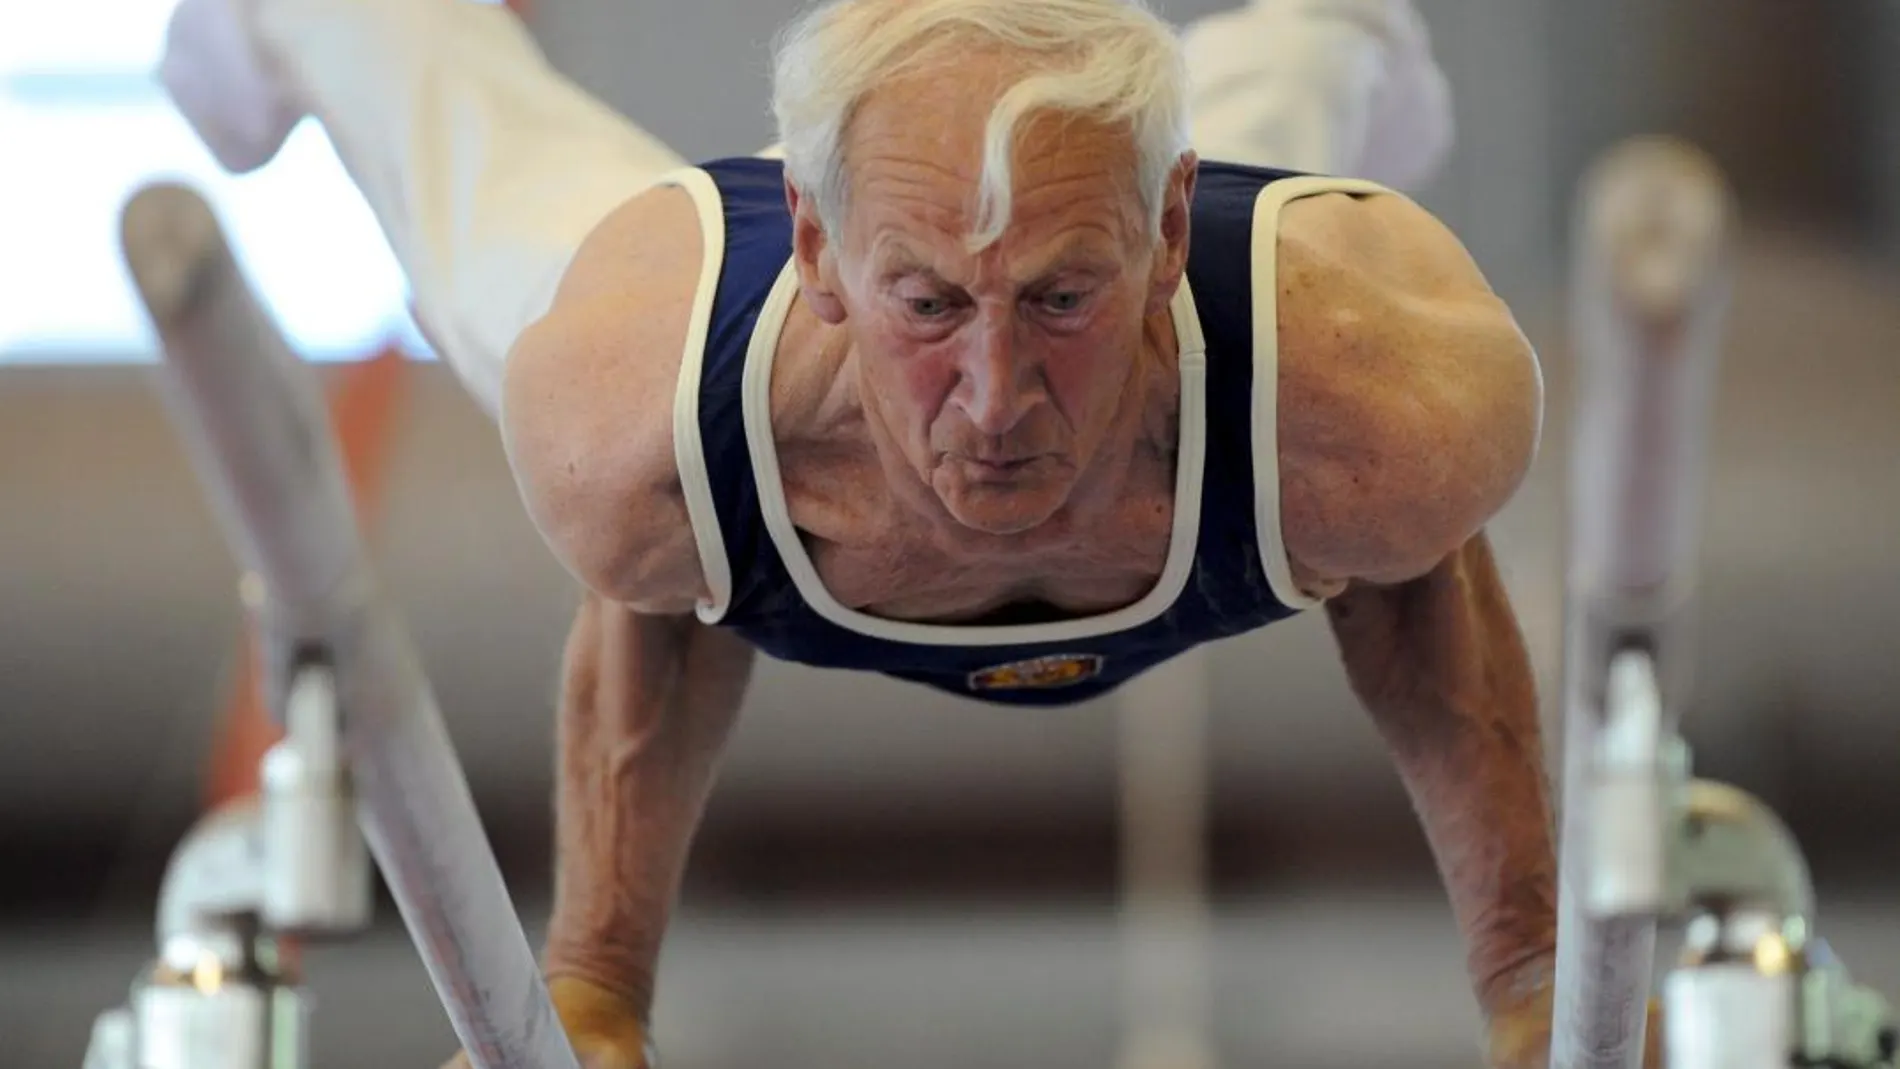 El ejercicio físico es muy recomendable en cualquier edad, también entre los ancianos